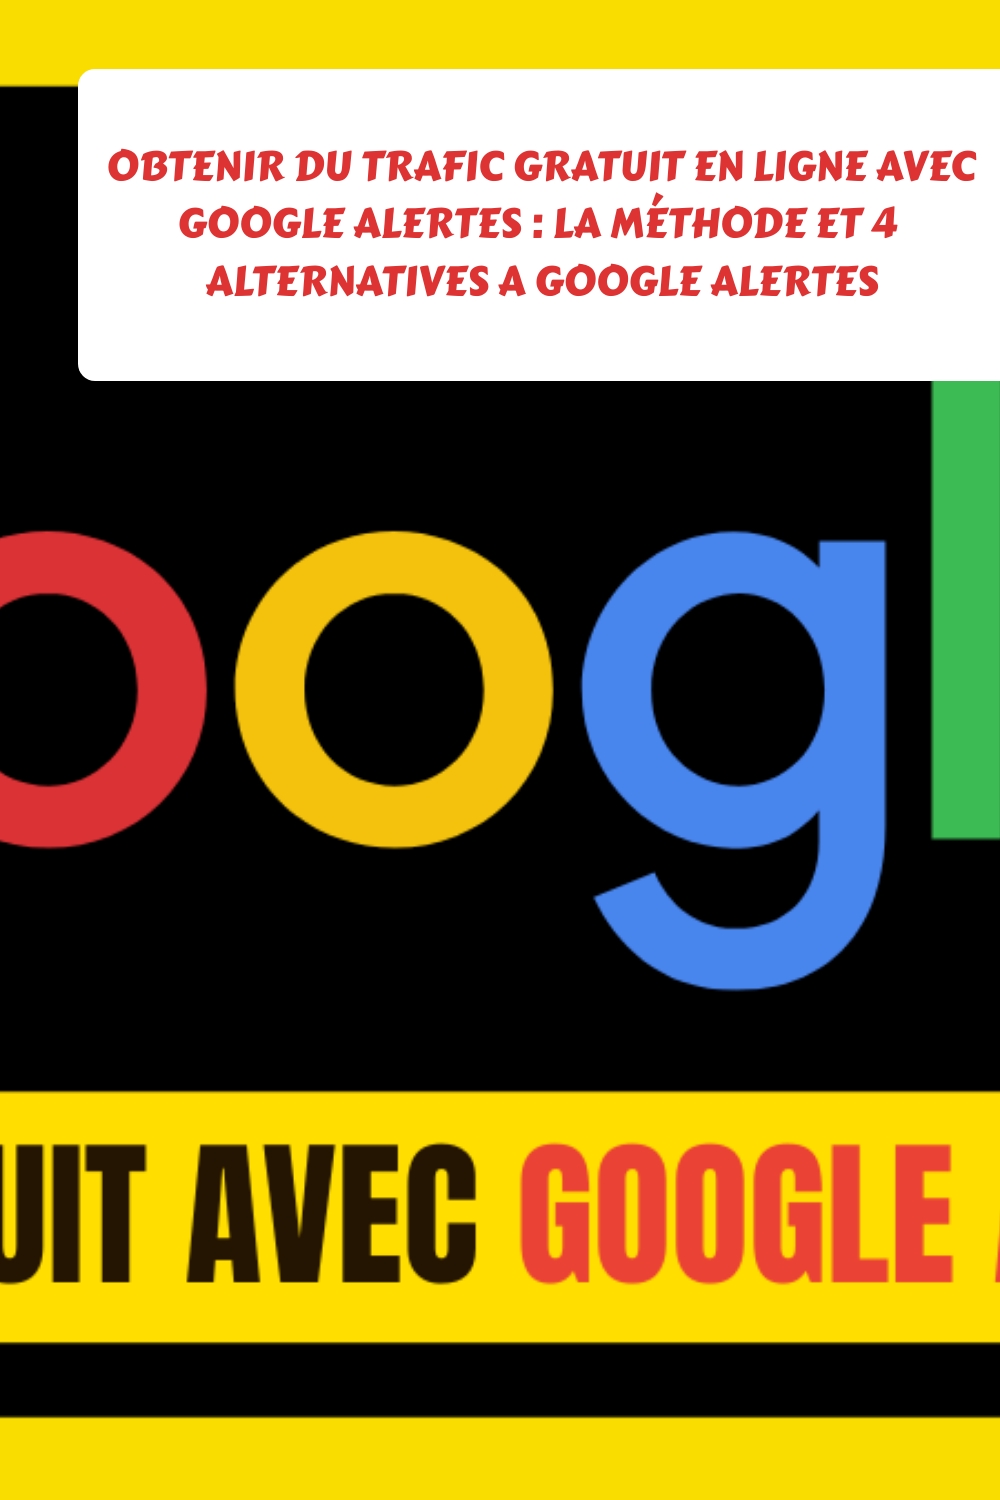 Obtenir du Trafic gratuit en ligne avec Google alertes : la méthode et 4 alternatives a Google alertes